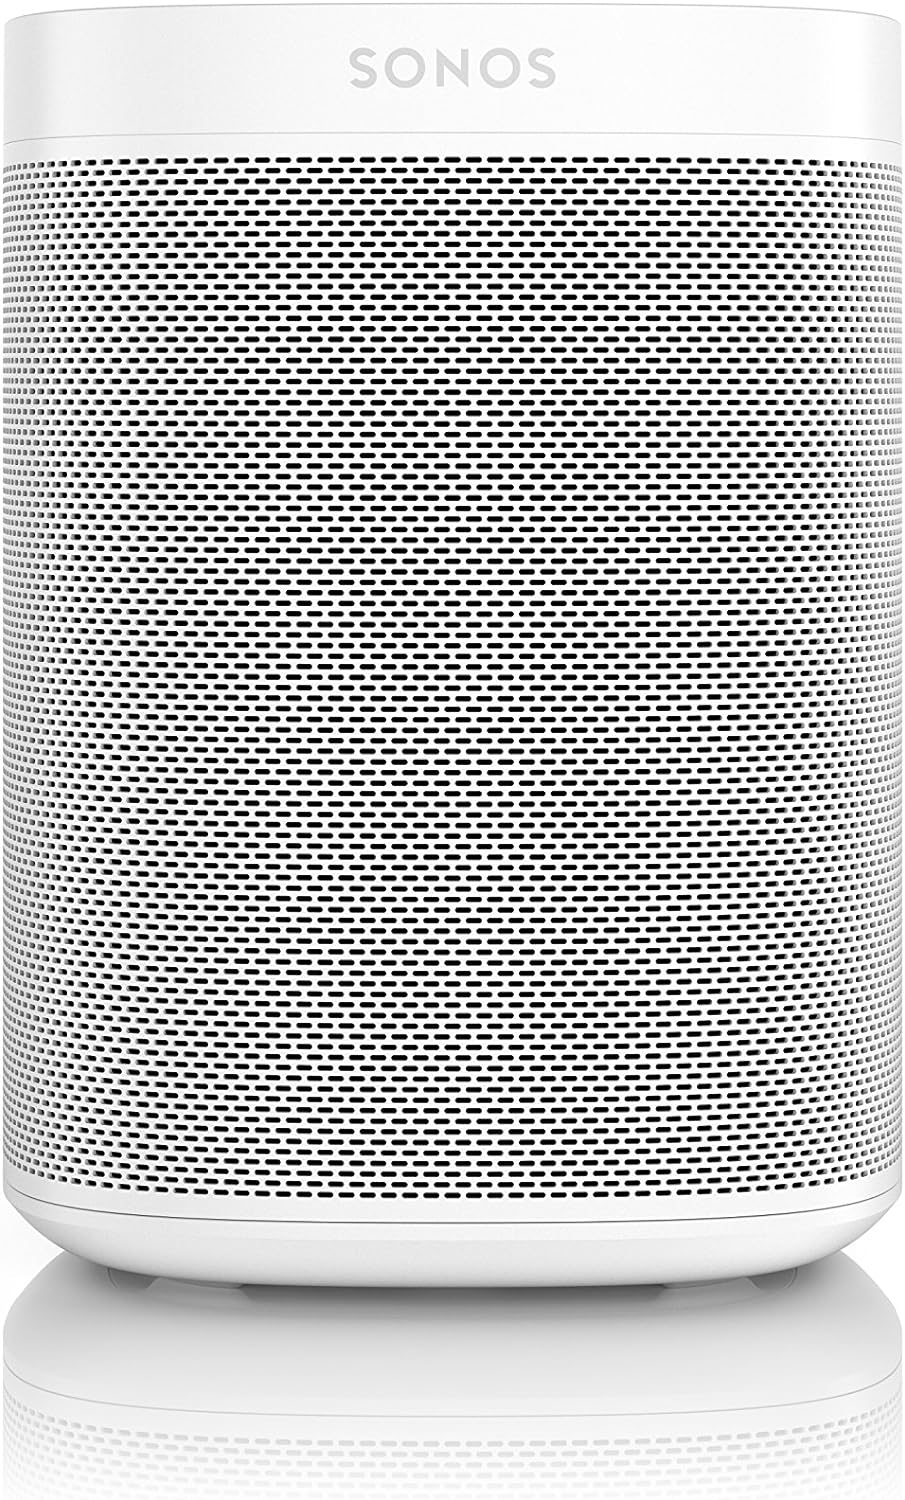 Sonos One Gen 2 Smart Speaker with Amazon Alexa - White - Excellent